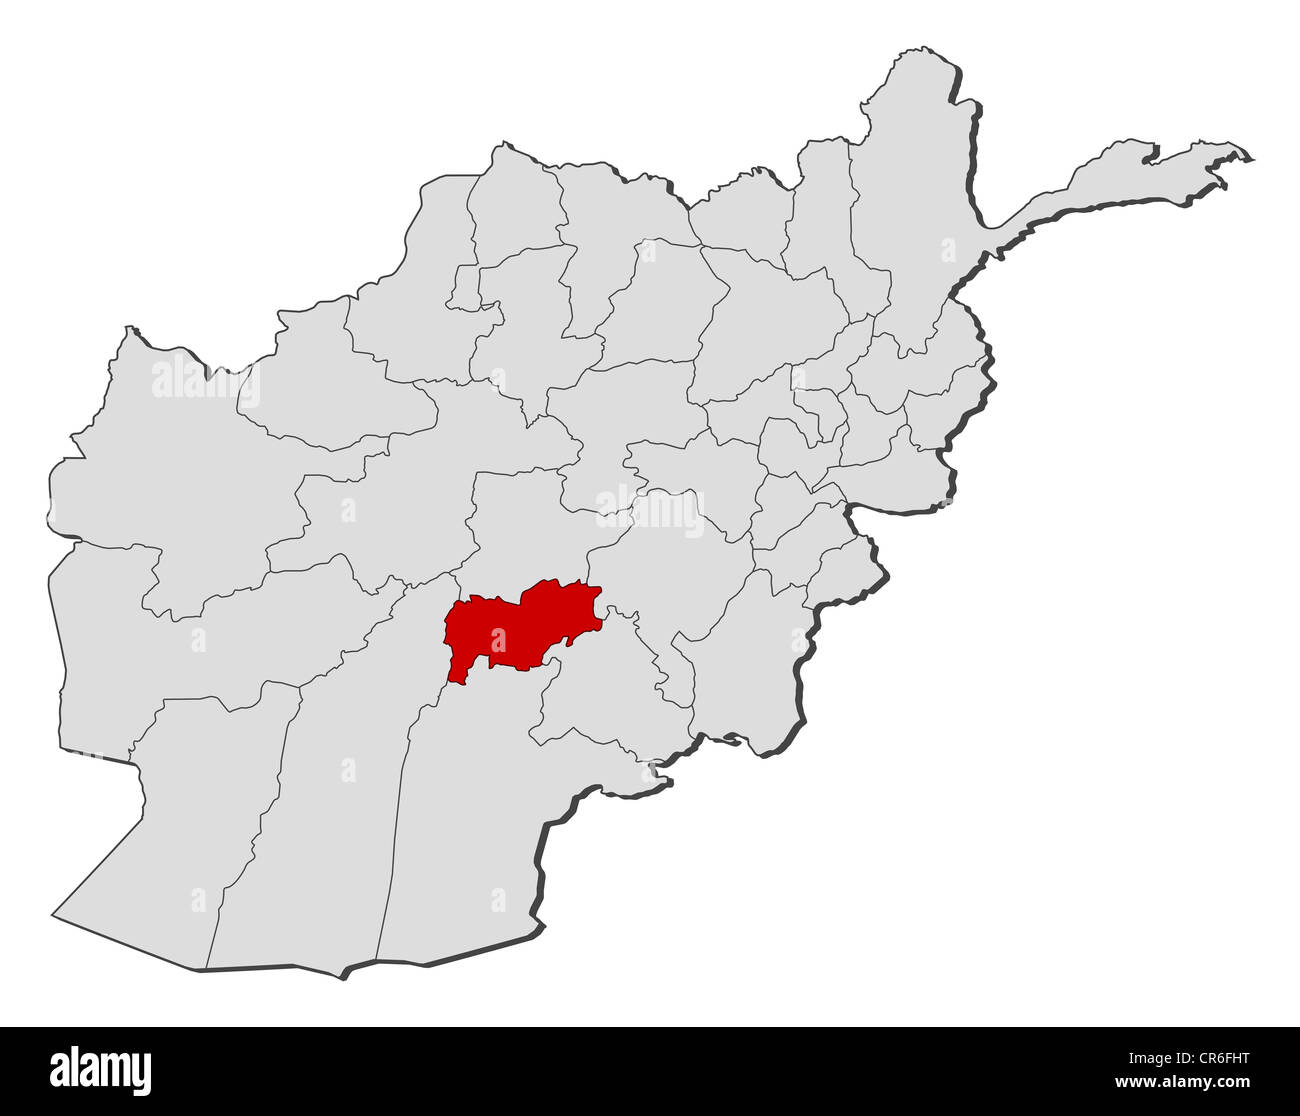 Mappa politica dell'Afghanistan con le diverse province dove Urozgan è evidenziata. Foto Stock